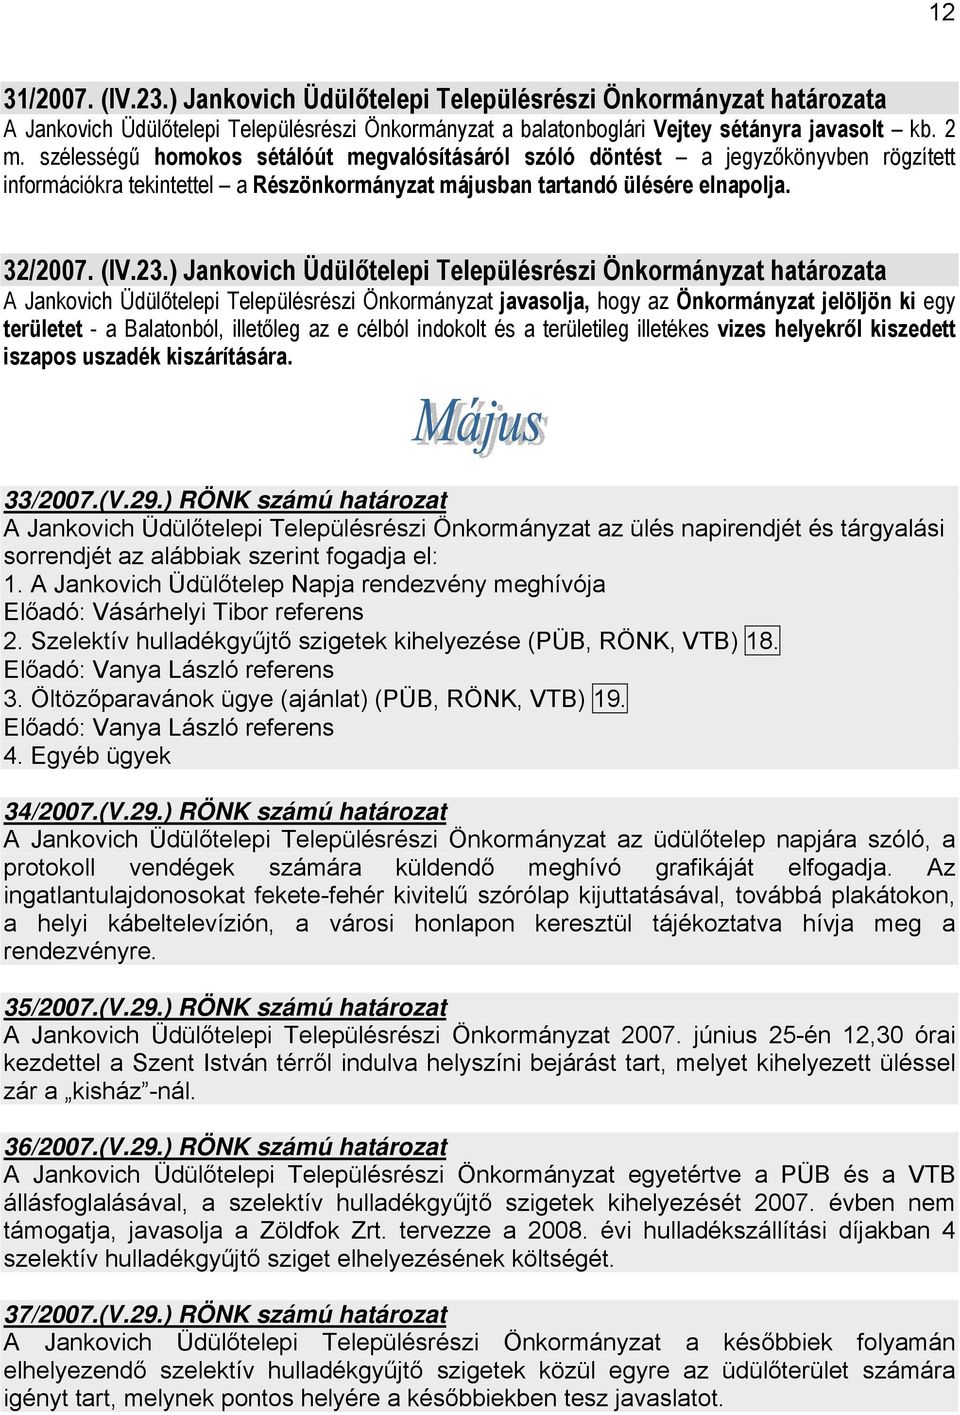 ) Jankovich Üdülőtelepi Településrészi Önkormányzat határozata A Jankovich Üdülőtelepi Településrészi Önkormányzat javasolja, hogy az Önkormányzat jelöljön ki egy területet - a Balatonból, illetőleg